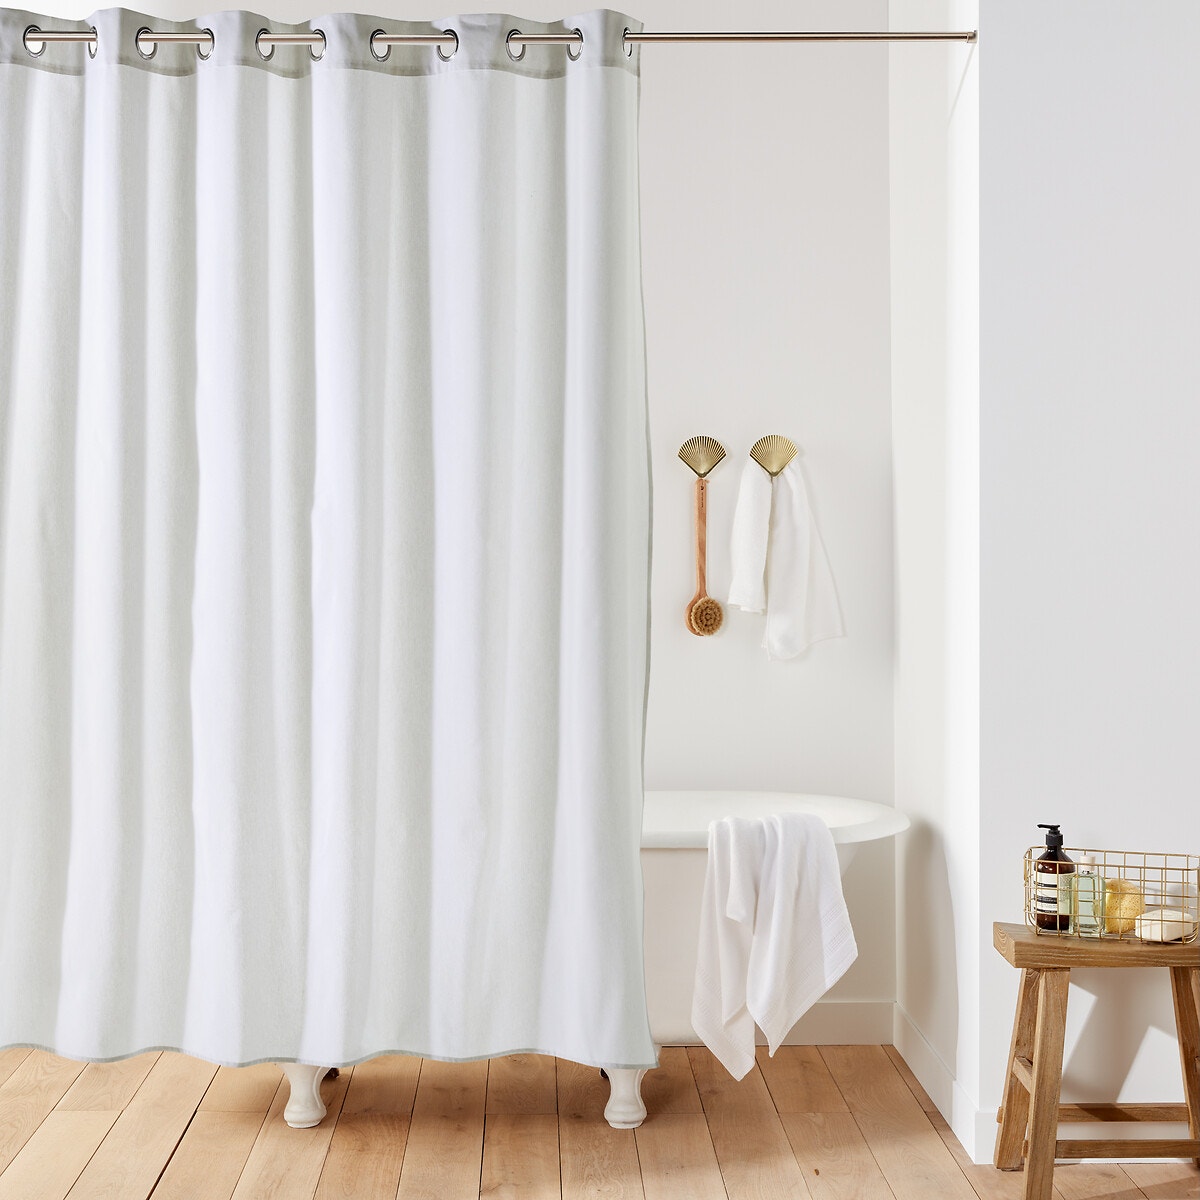 Σπίτι > Λευκά είδη > Μπάνιο > Κουρτίνες μπάνιου Μονόχρωμη κουρτίνα μπάνιου SCENARIO 200x120 cm